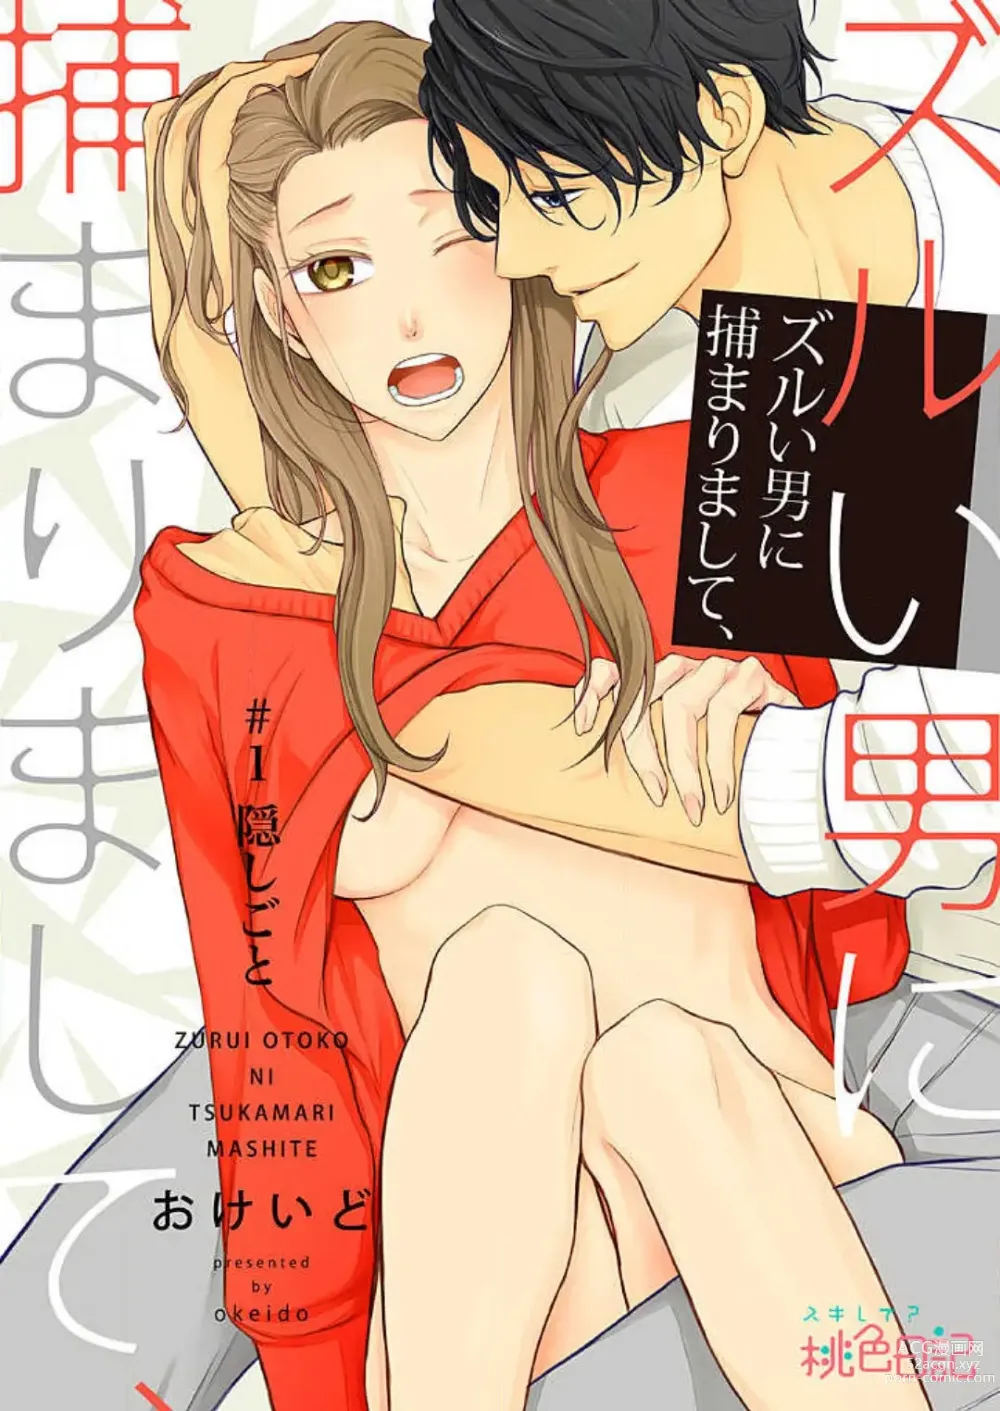 Page 1 of manga Zurui Otoko ni Tsukamarimashite